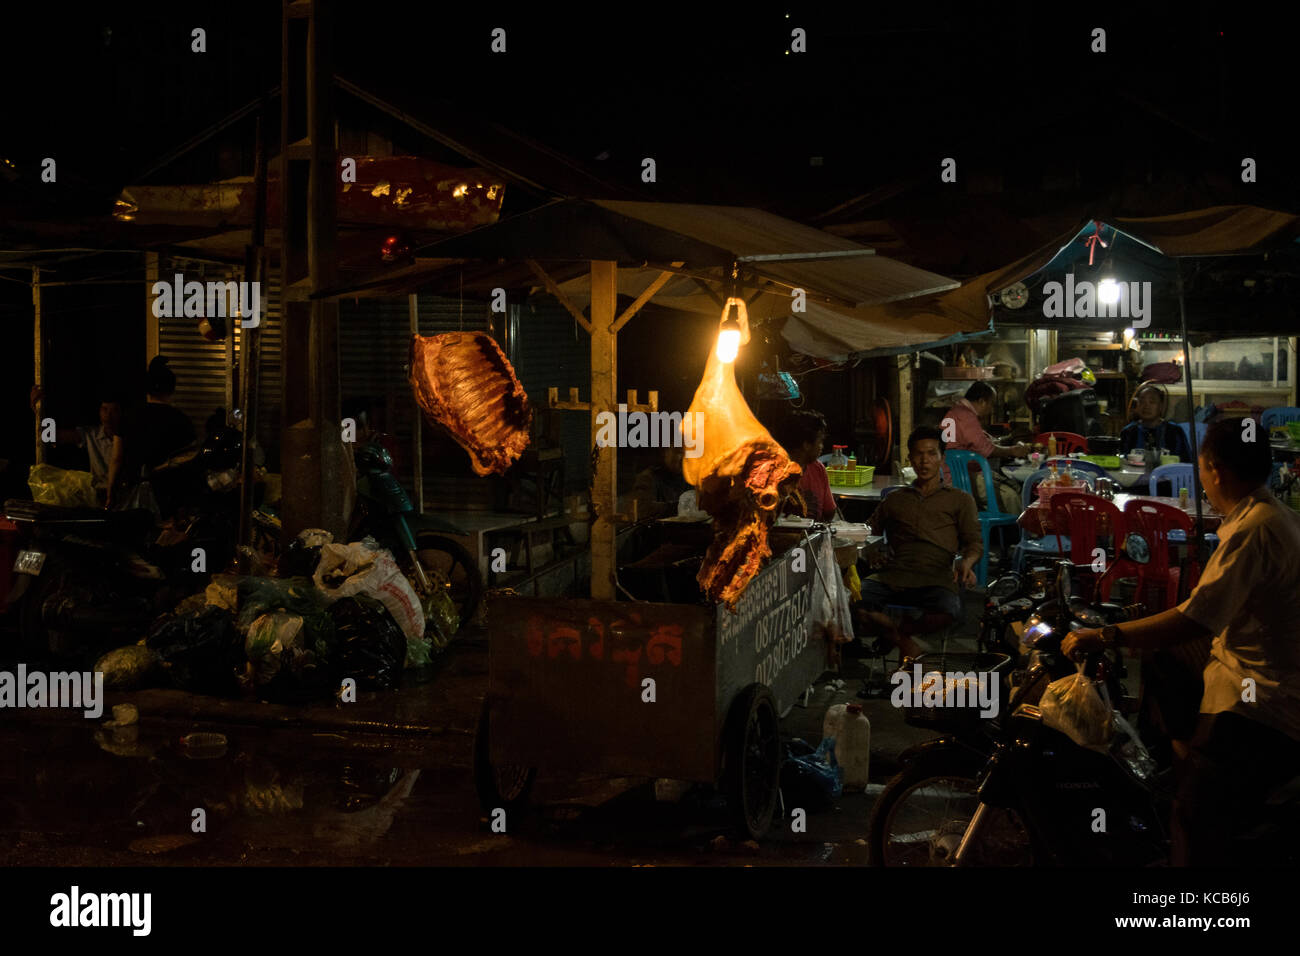 Metzgerei Verkauf von Fleisch in einem mobilen Stand, neben einem lokalen Restaurant in Phnom Penh, Kambodscha. Eine rackof Rippen und ein ganzes Bein ist auf Anzeige aufgehängt. SE-Asien Stockfoto